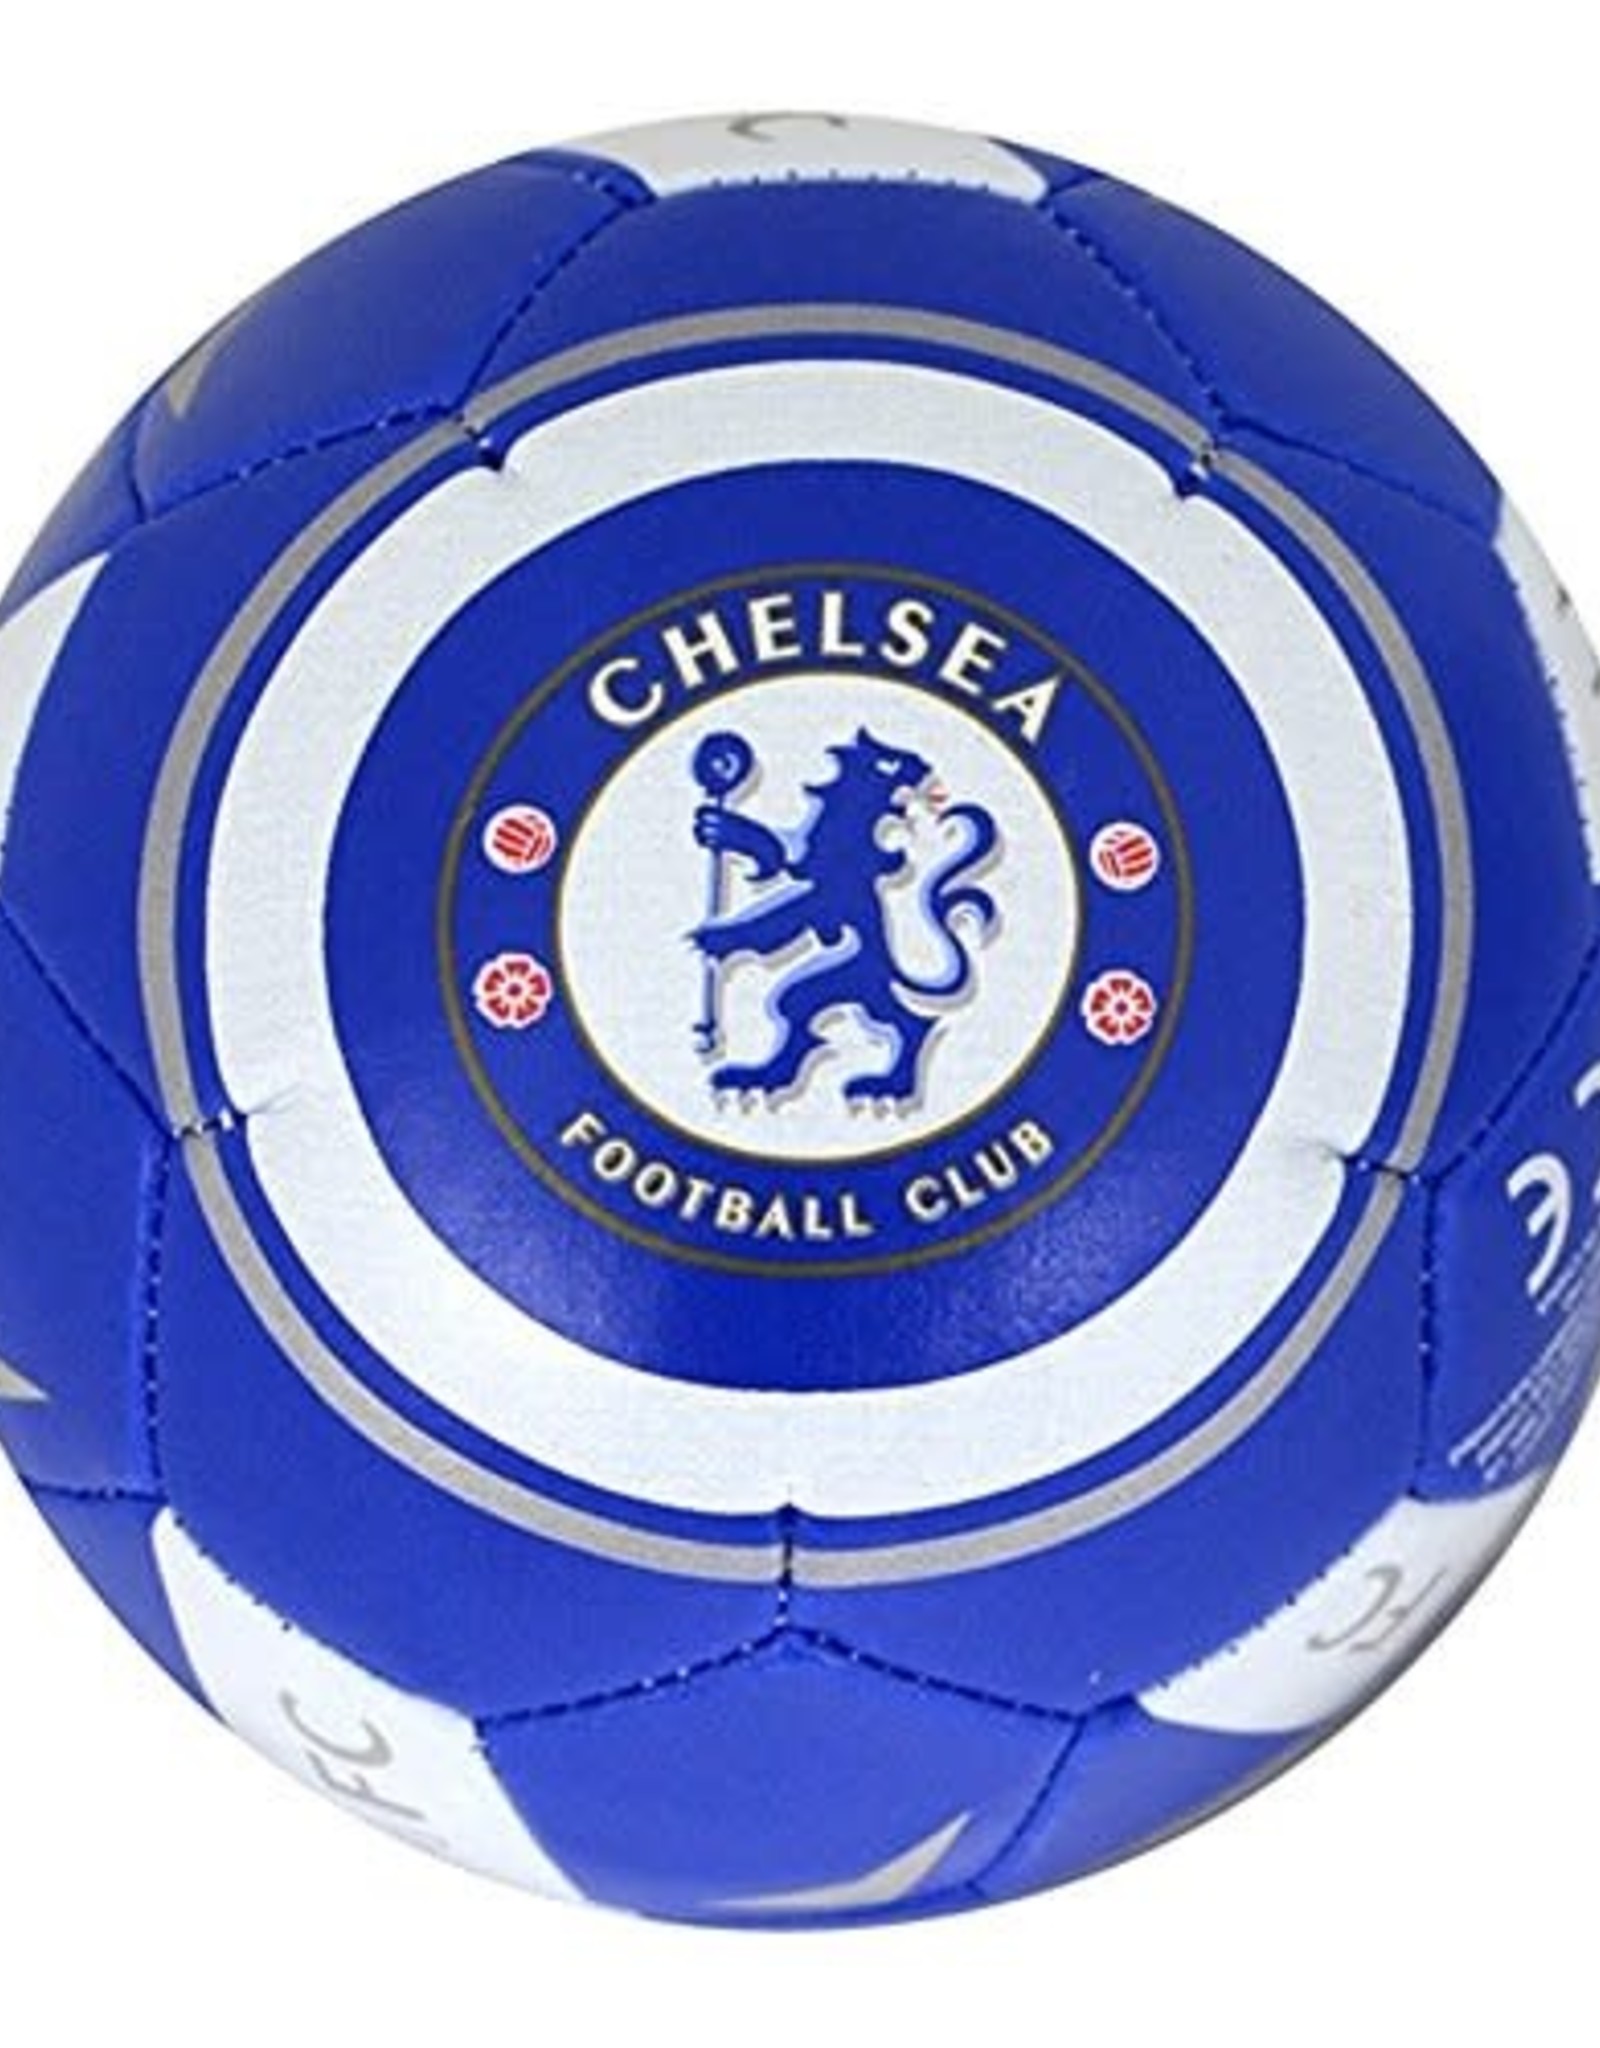 Chelsea Soccer Ball Blue/White Size 3